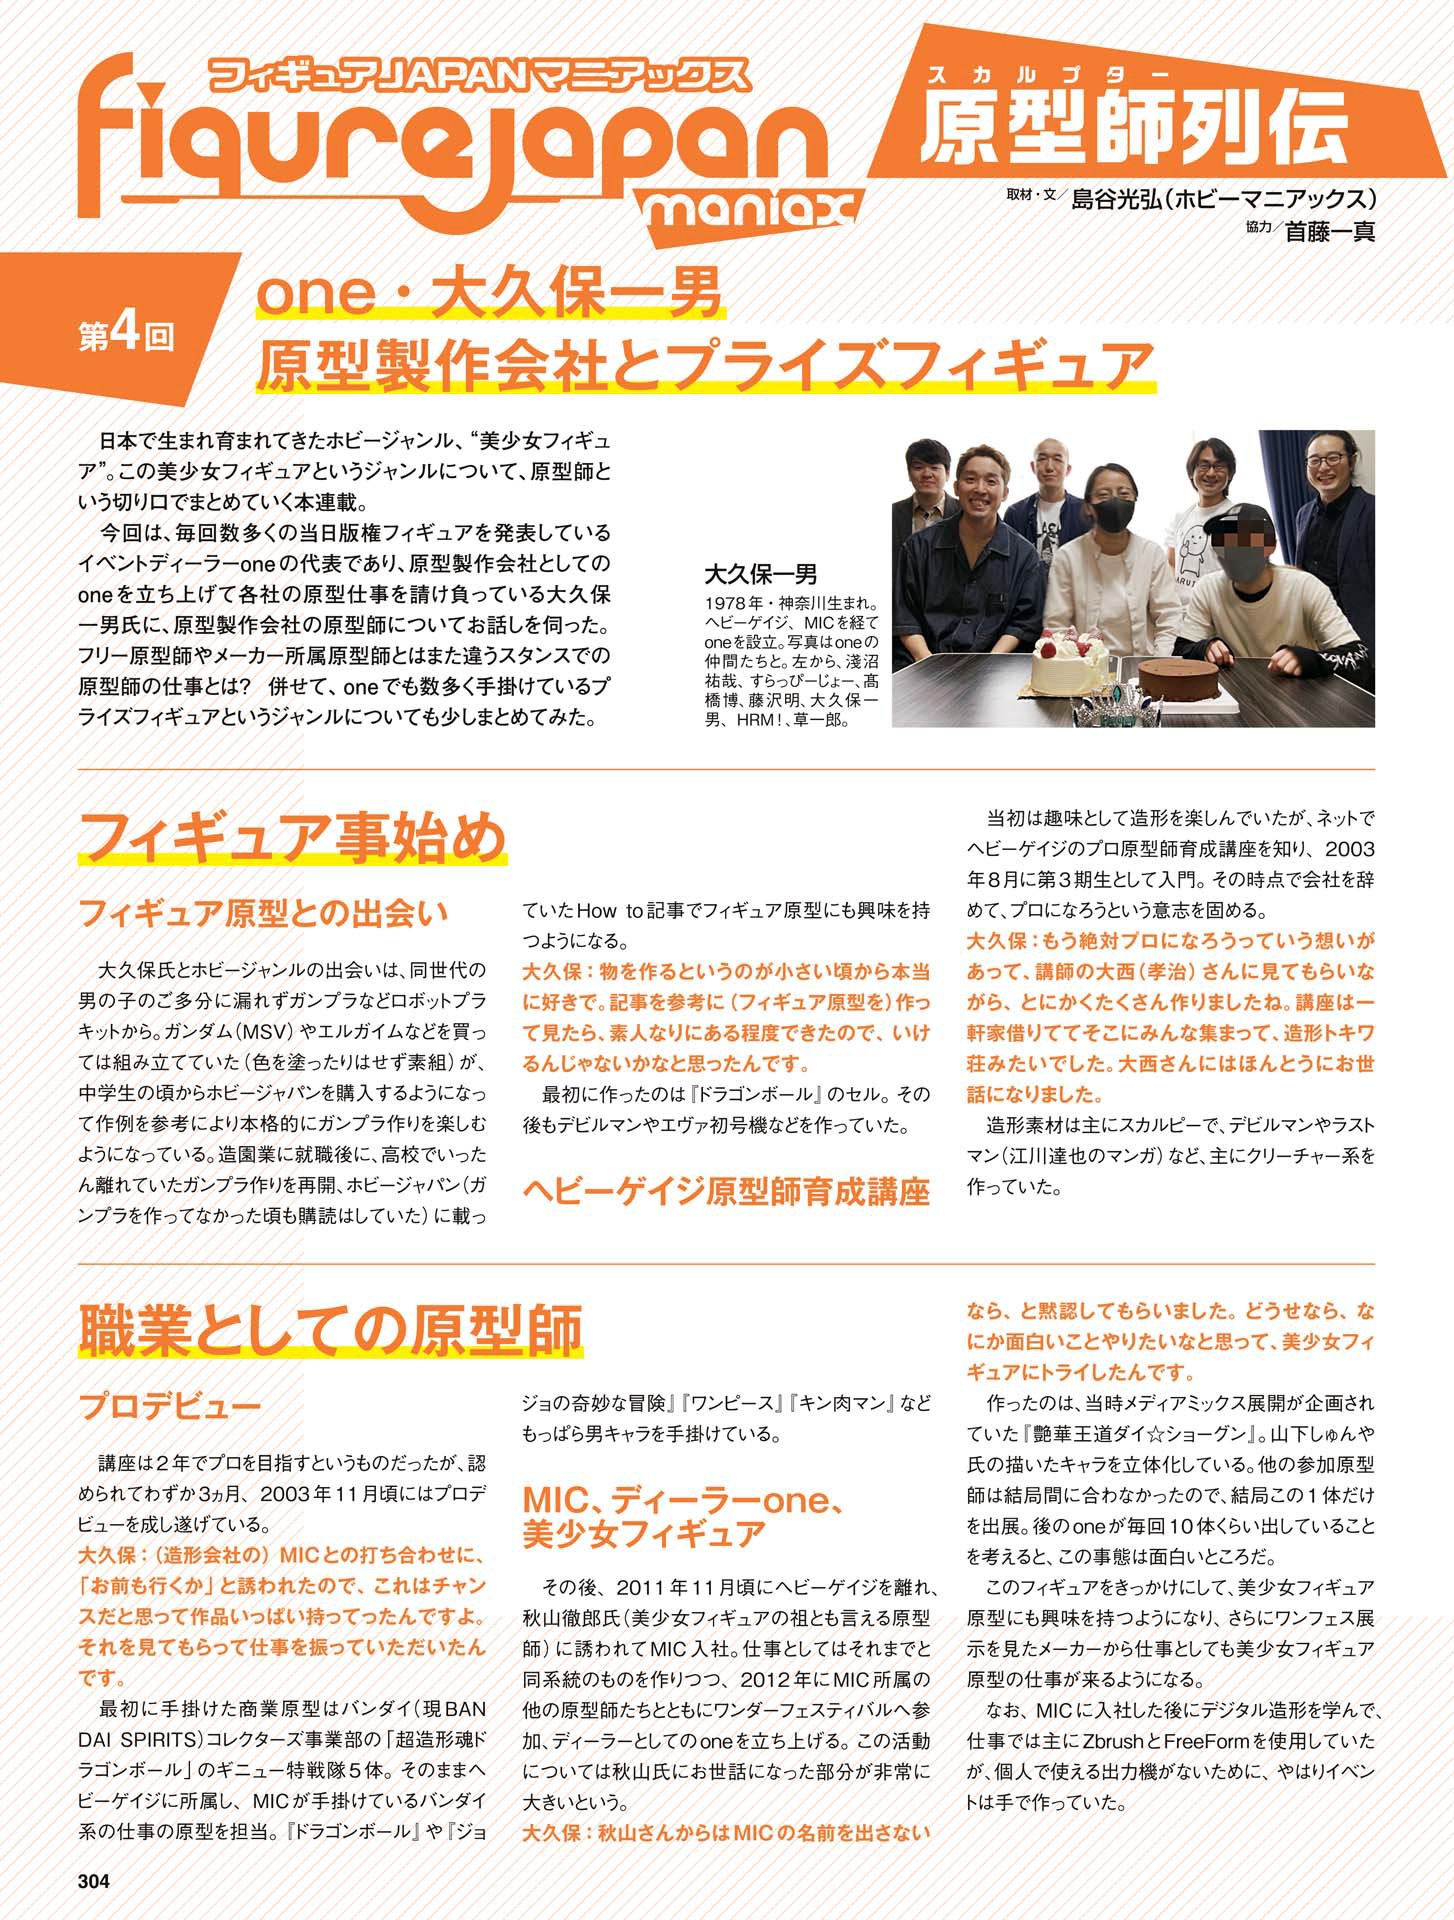 月刊ホビージャパン2022年8月号 - ホビージャパン編集部-303 副本.png